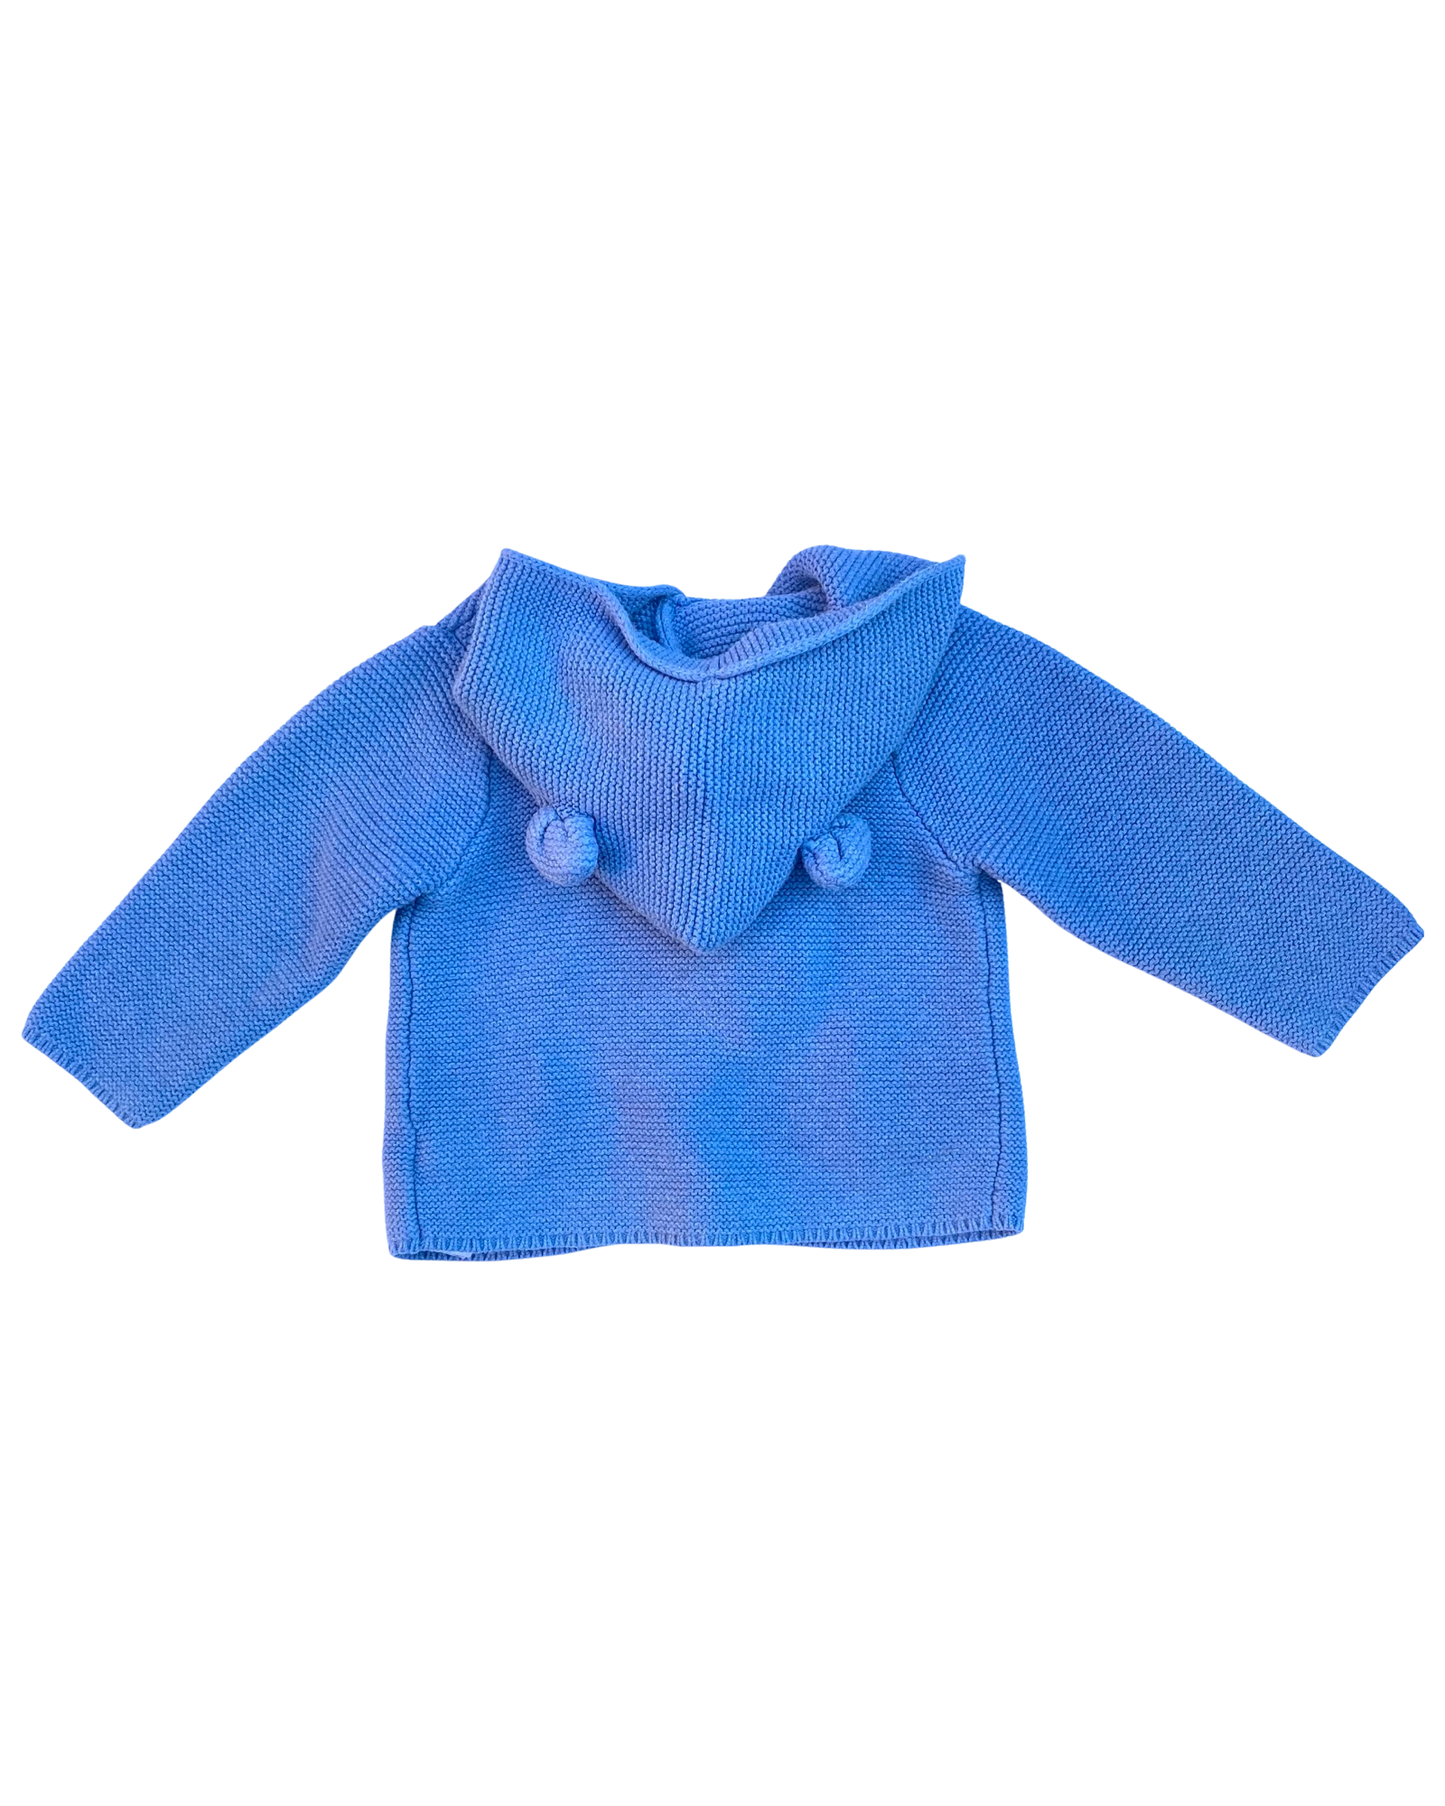 Baby Gap hooded Brannan Bear cardigan in blue marl (size 18-24mths)